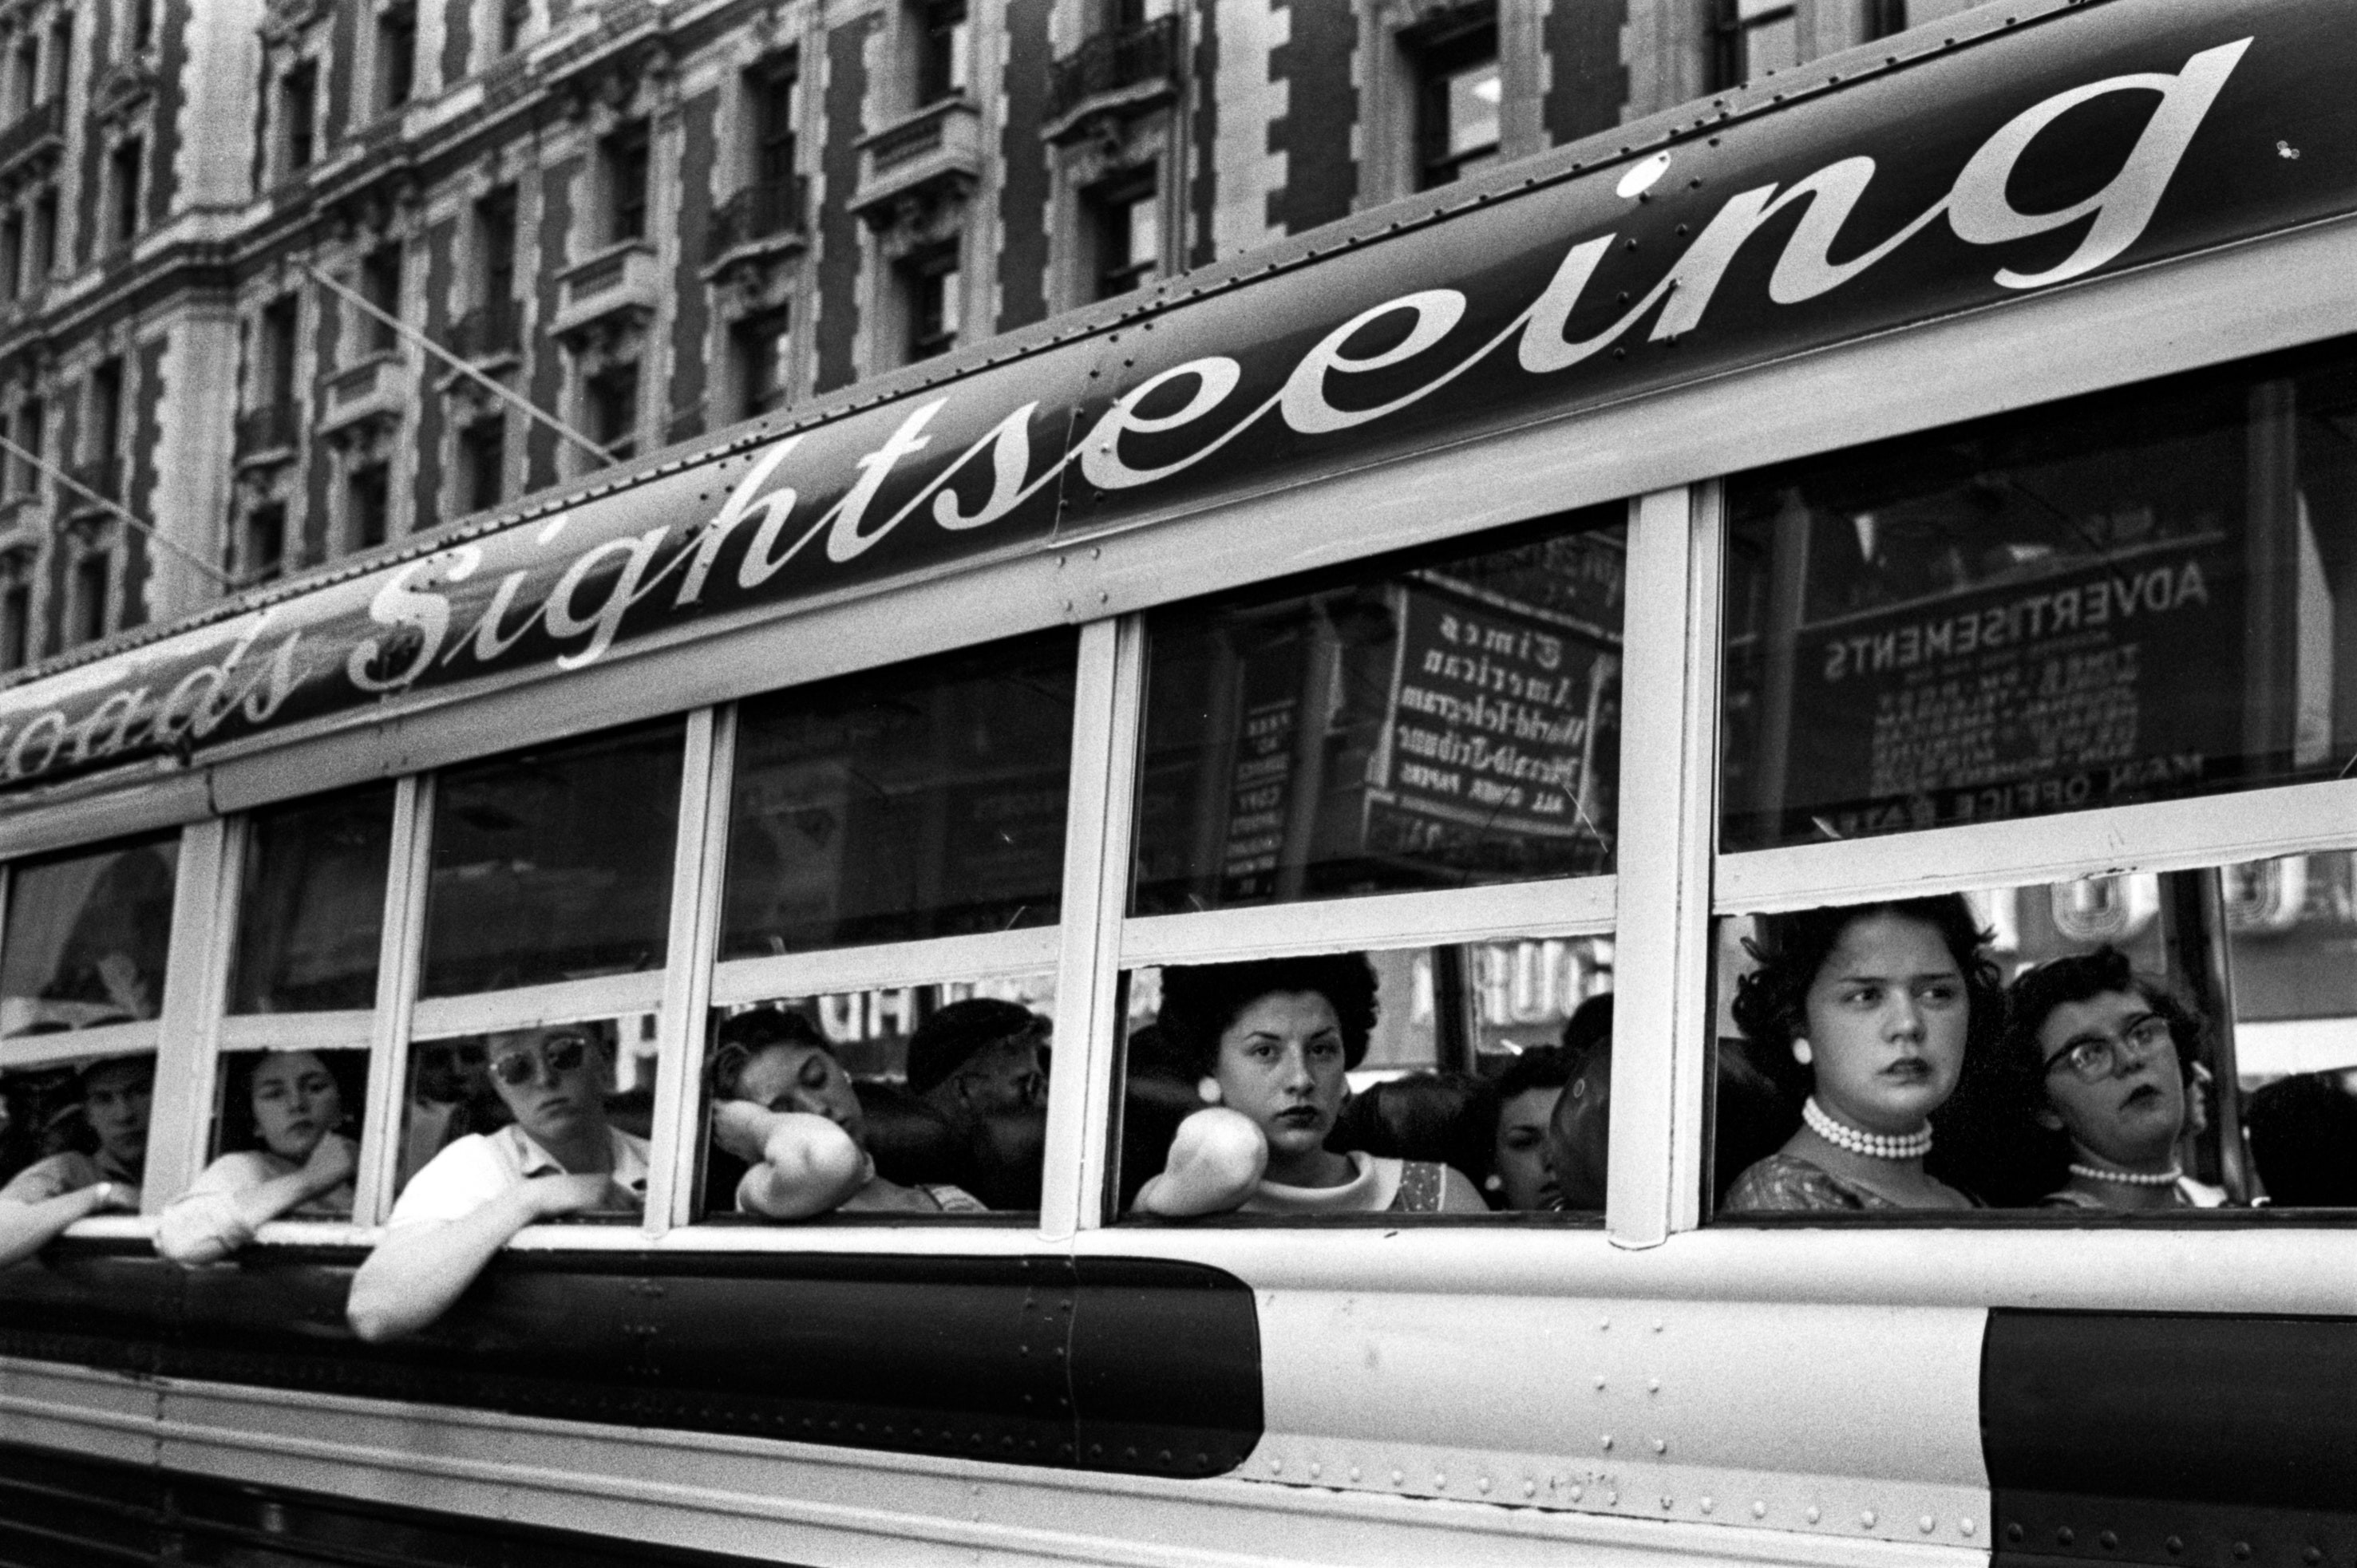 Экскурсионный автобус, Нью-Йорк, 1956. Фотограф Гарольд Файнштейн